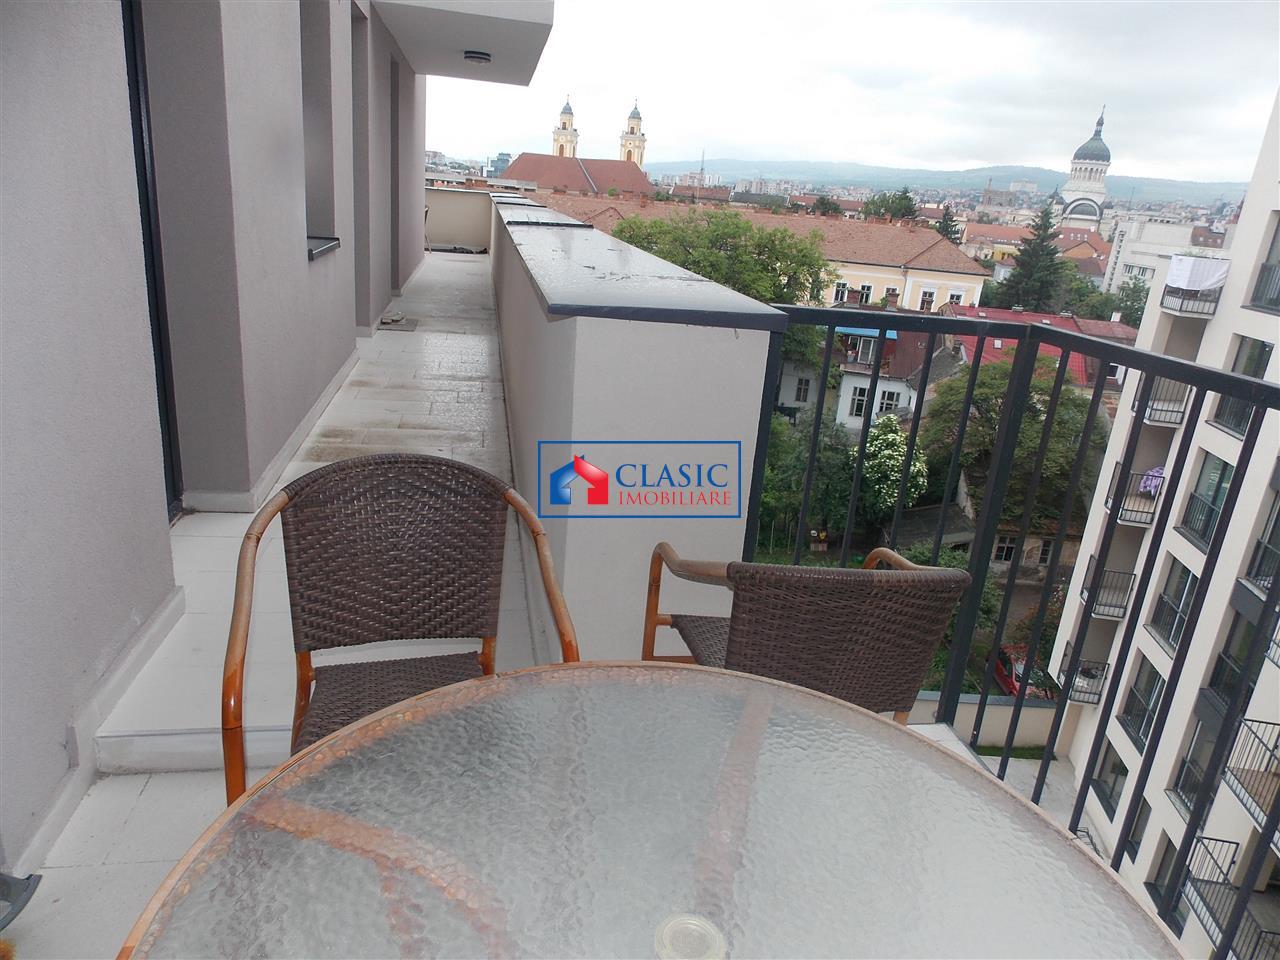 Inchiriere Apartament 3 camere de LUX in bloc nou Centru, Cluj Napoca